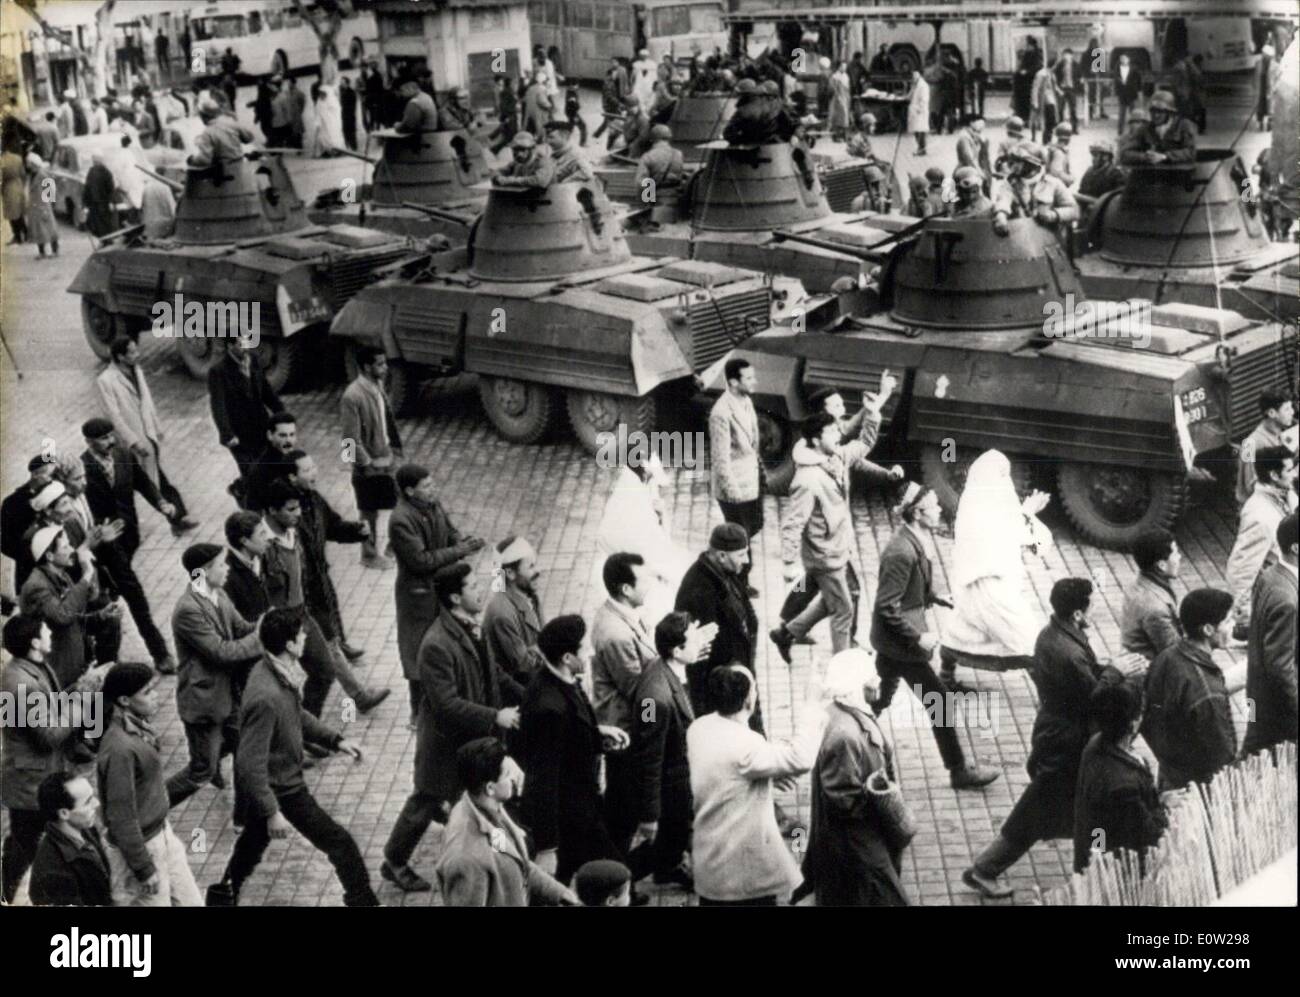 Dic. 15, 1960 - Algeri: disordini continua: Mostra fotografica nativo pass demnonstrators unchallanged prima di carri armati pesanti che circonda la sezione nativa. Foto Stock